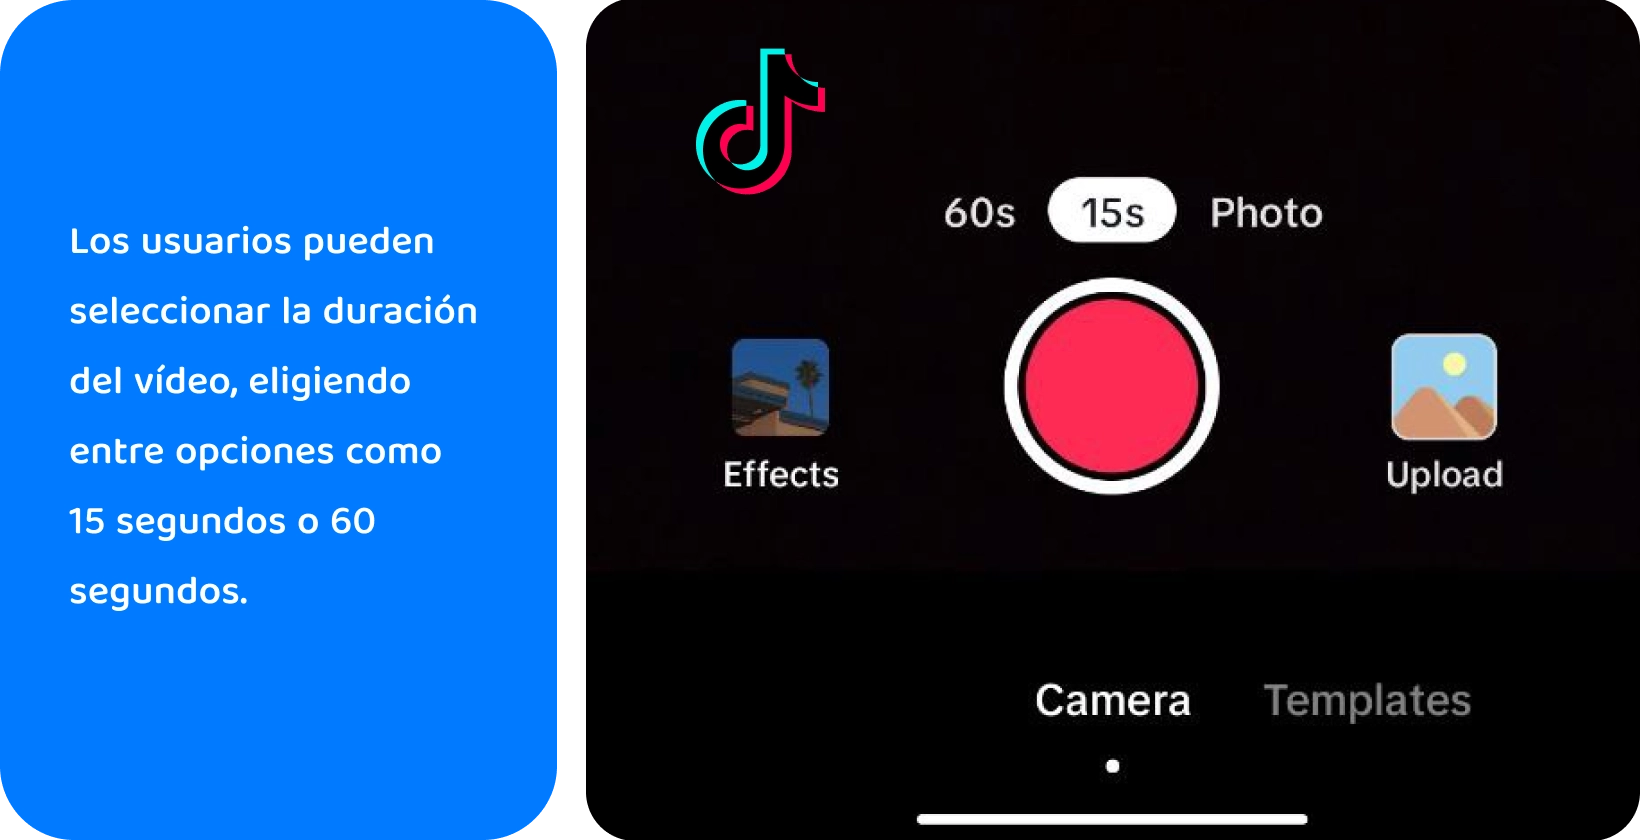 La interfaz de grabación de TikTok con opciones para agregar sonido, voltear la cámara, aplicar filtros, usar temporizador y más para la creación de videos creativos.
